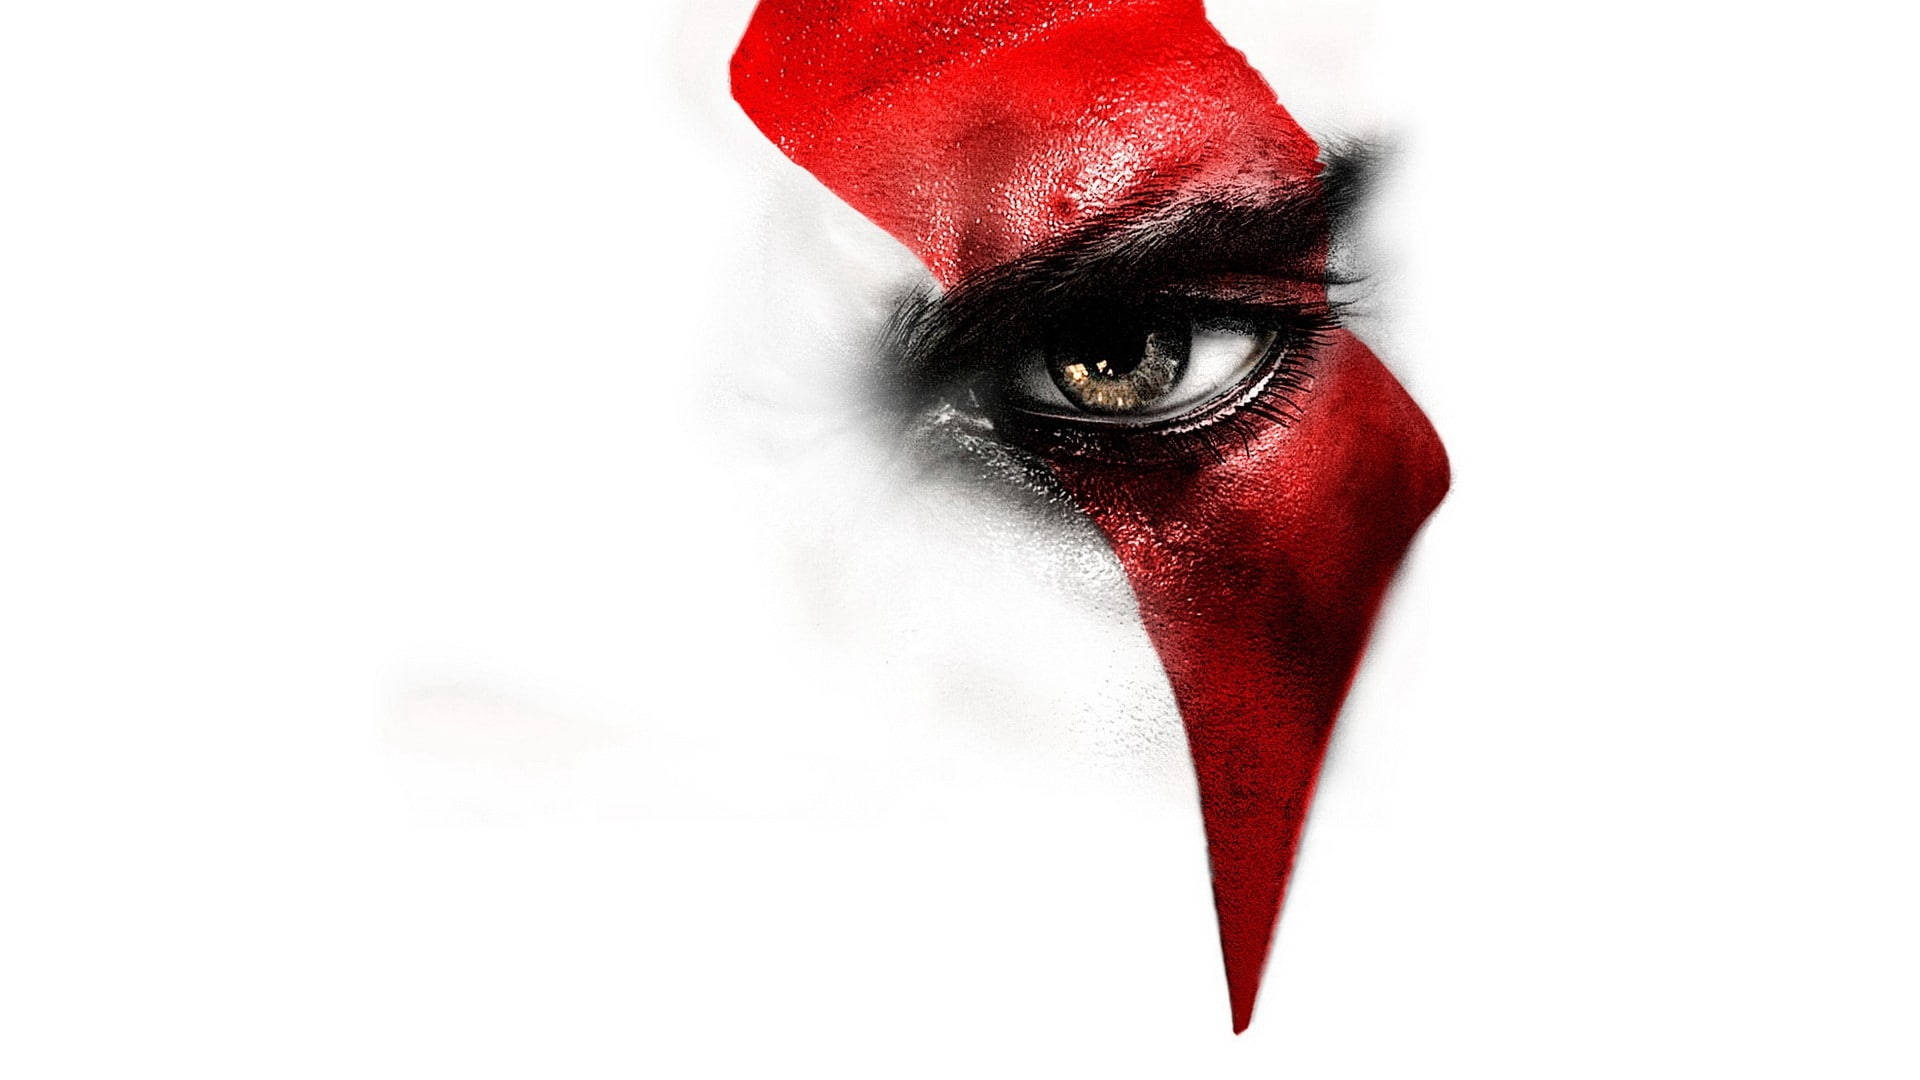 Free Kratos Wallpaper Downloads, [100+] Kratos Wallpapers for FREE |  